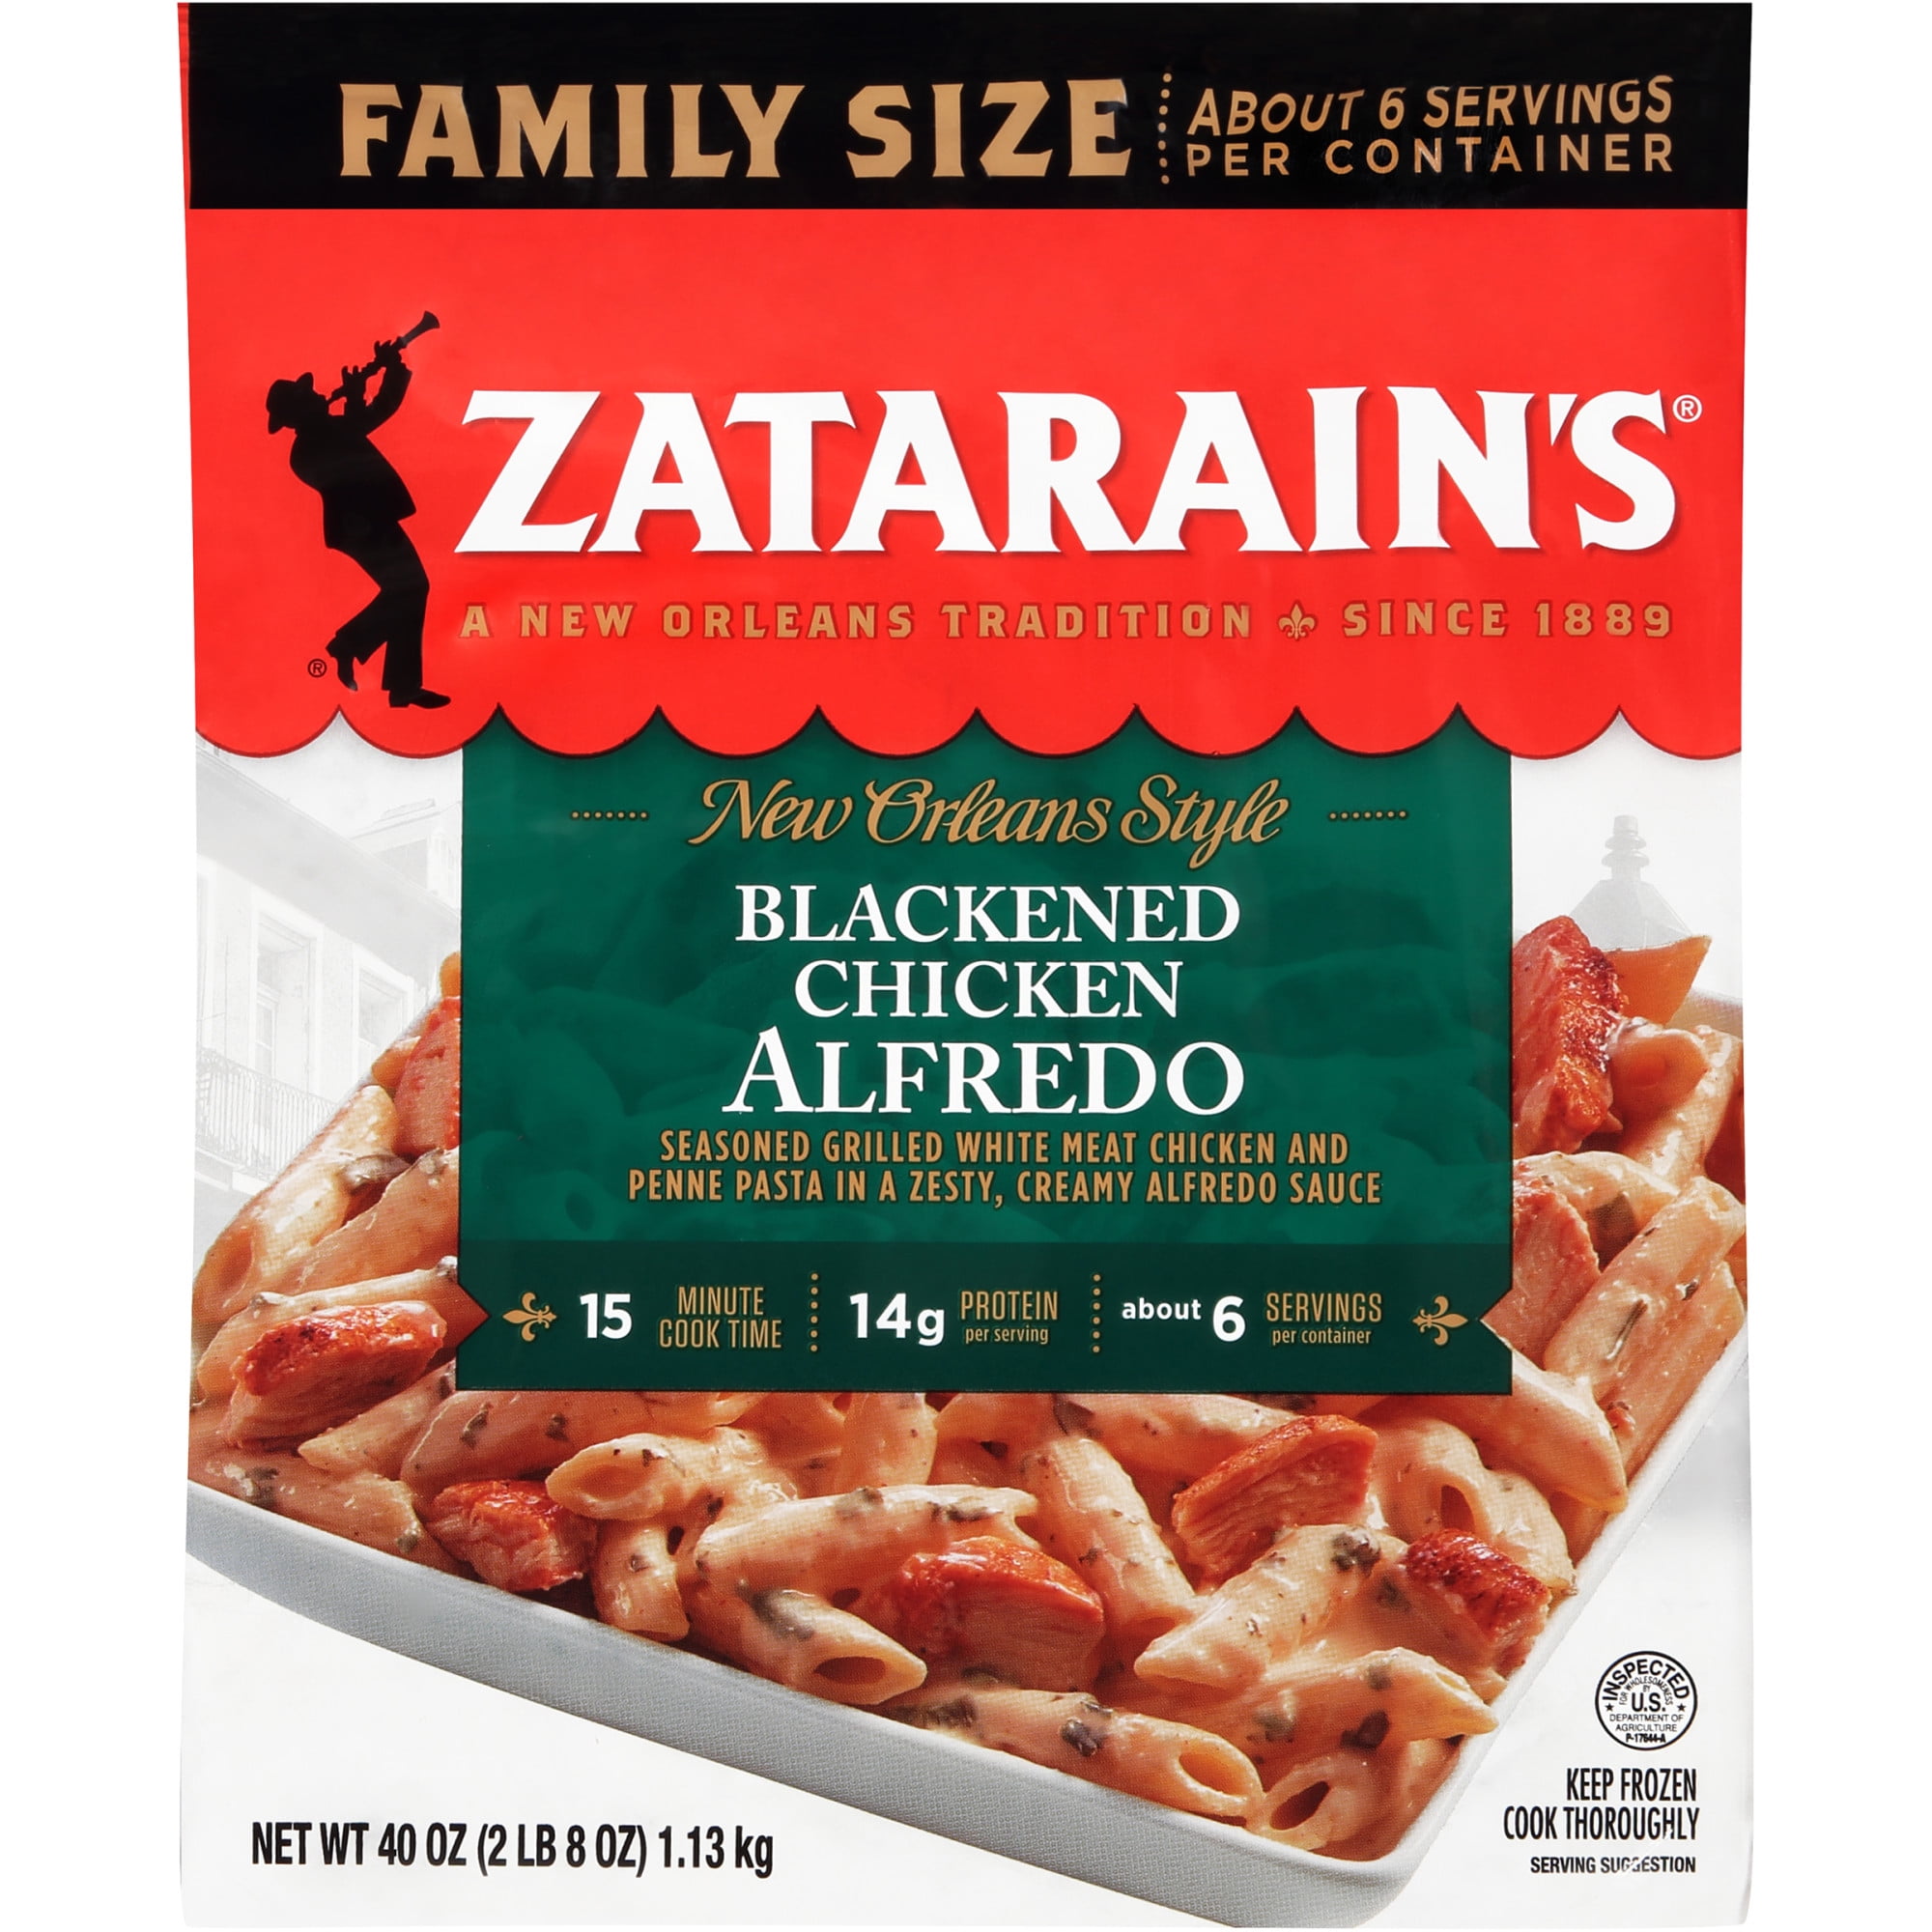 Zatarain's Bourbon Chicken Pasta Bowl Frozen Meal - 10.5 Oz